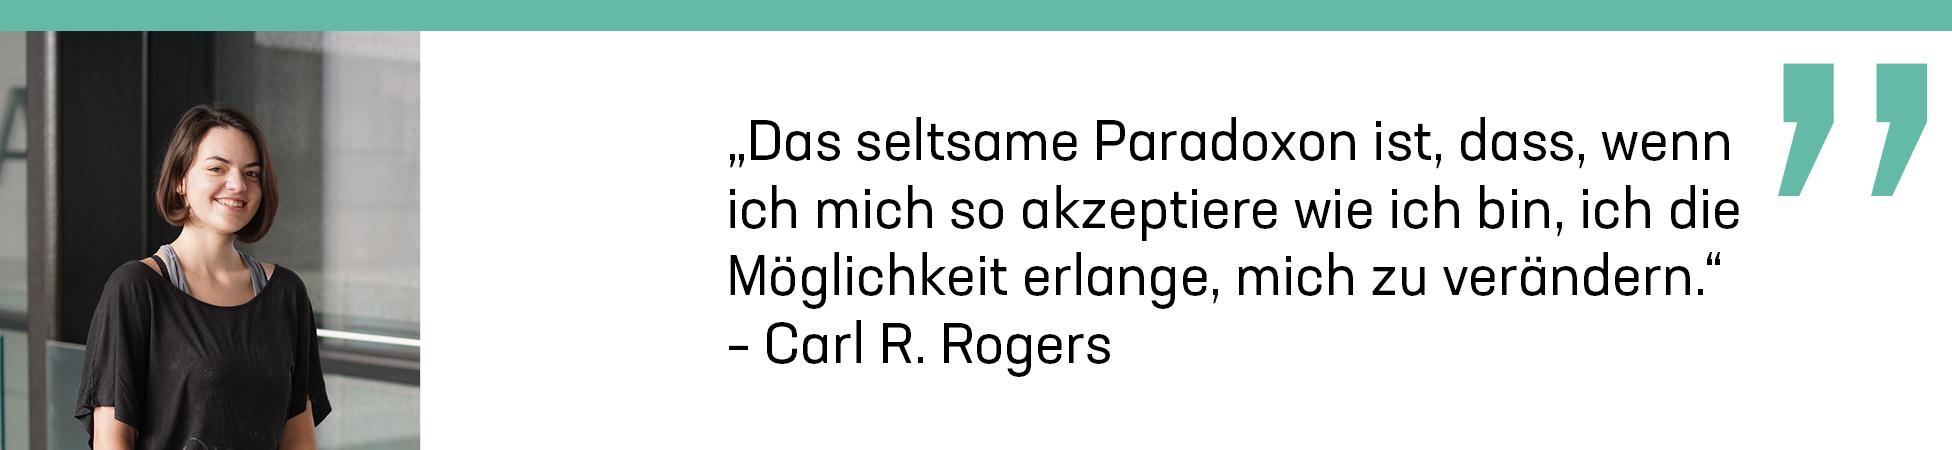 Portrait Eva Engel, „Das seltsame Paradoxon ist, dass, wenn ich mich so akzeptiere wie ich bin, ich die Möglichkeit erlange, mich zu verändern.“ – Carl R. Rogers